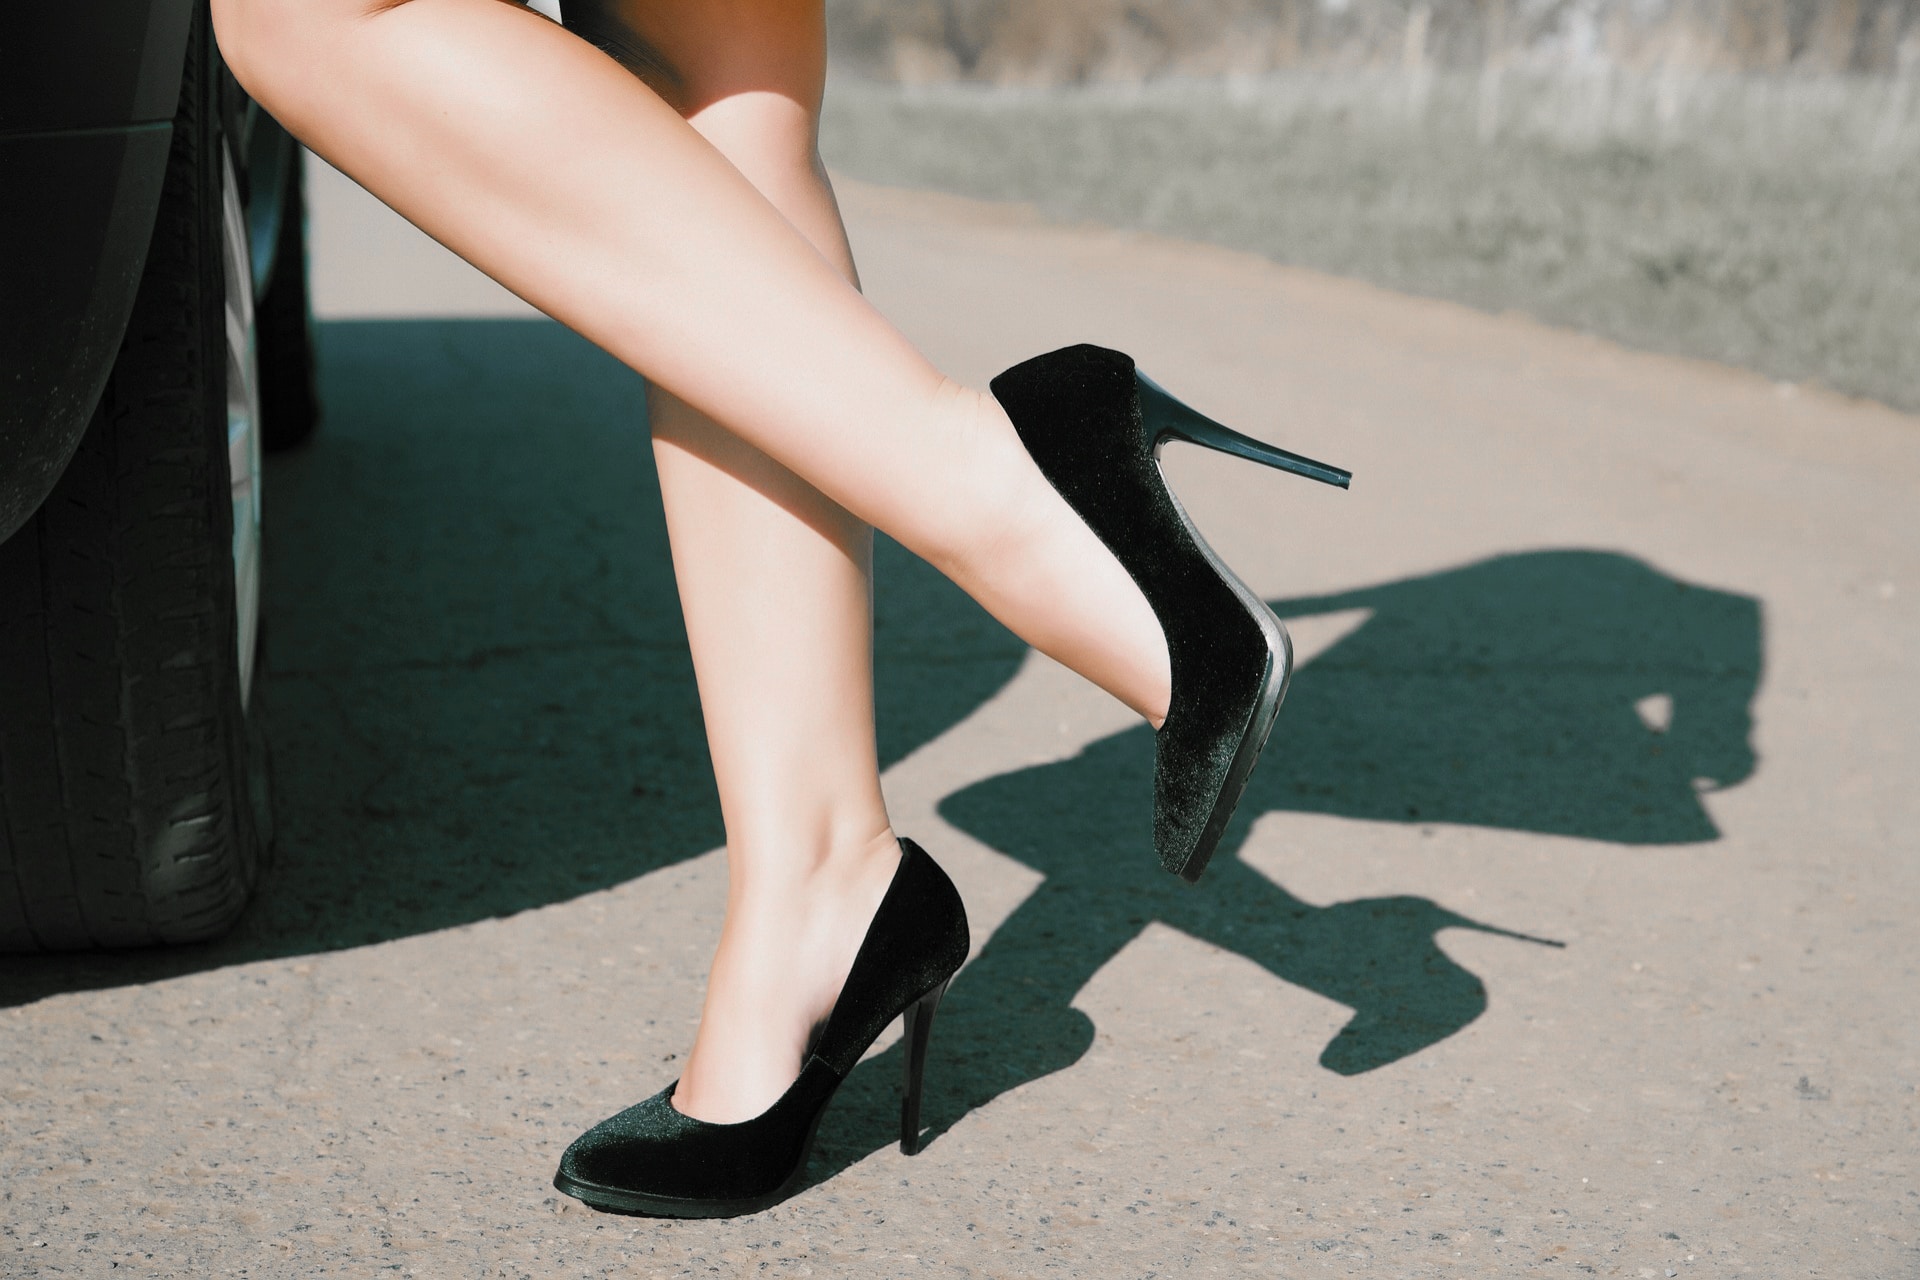 Pinterest | Stockings and high heels, Black high heels, Heels